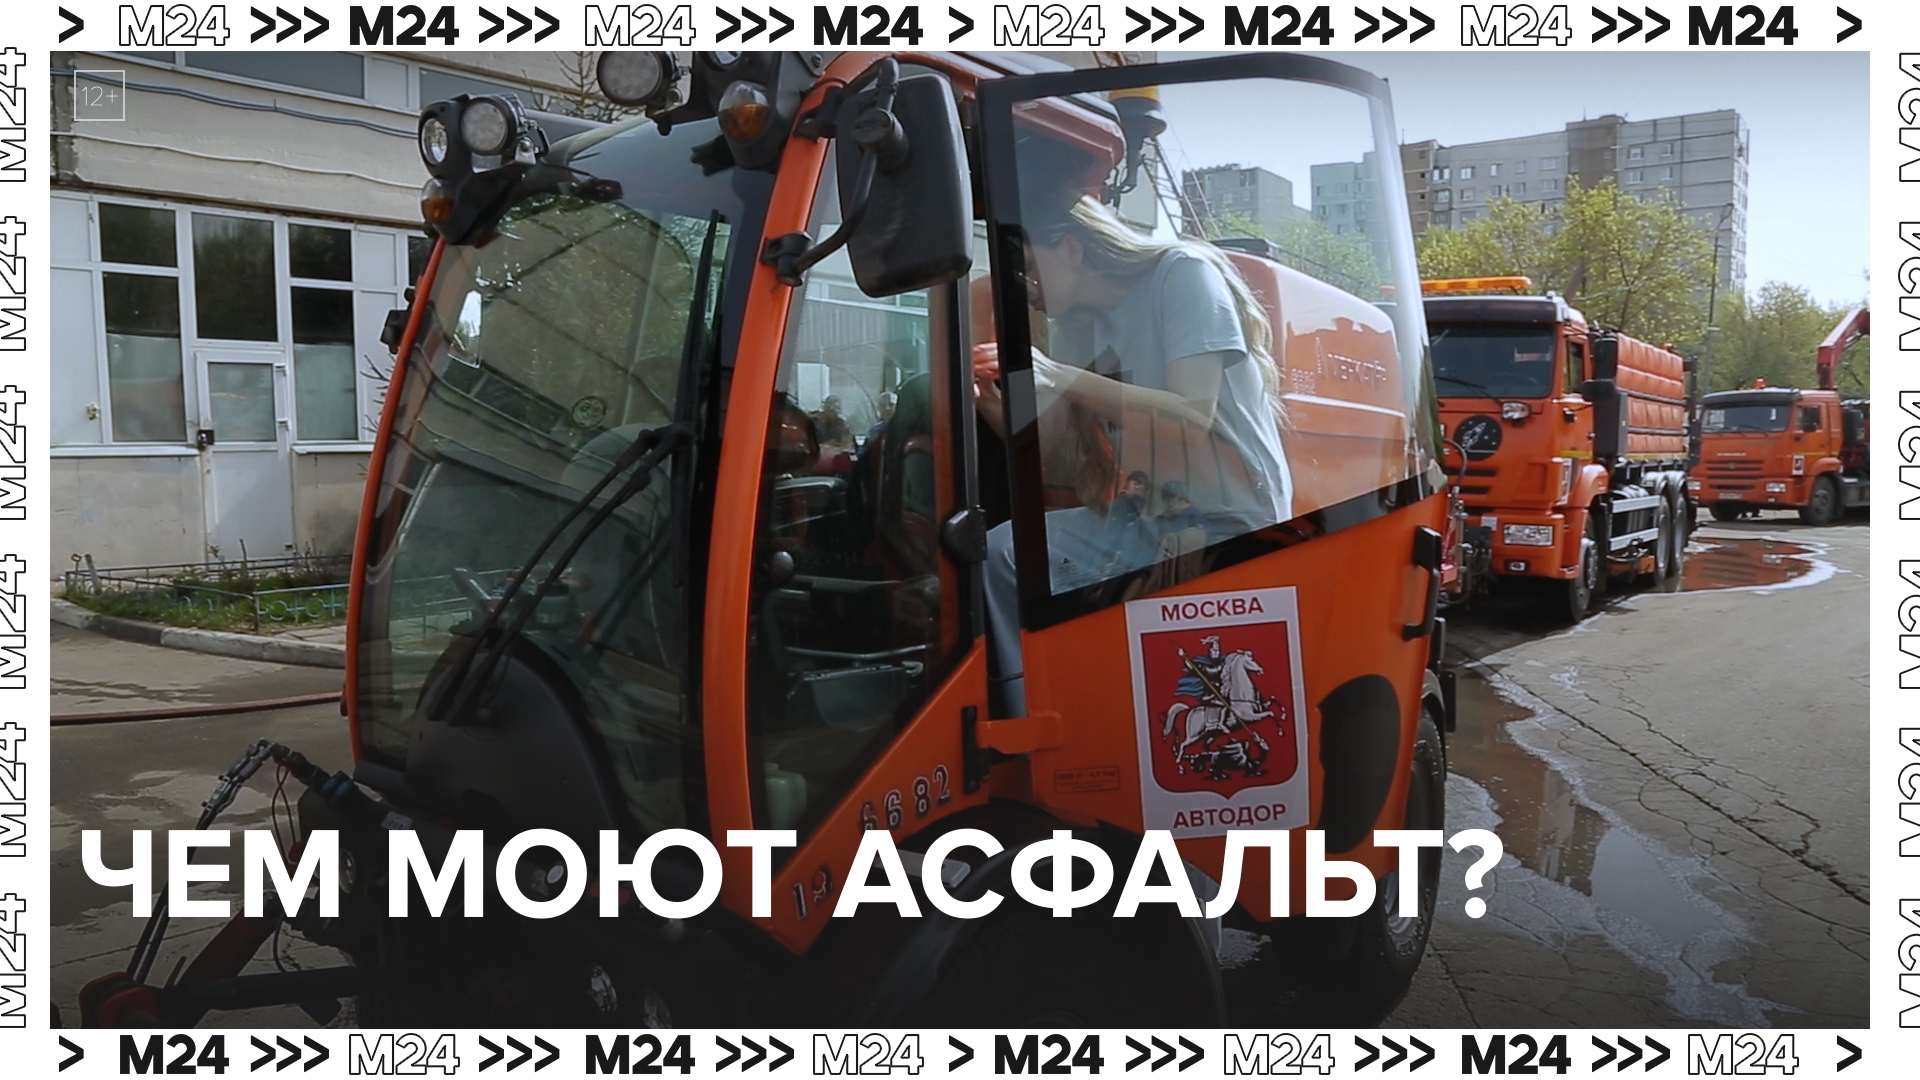 Чем моют асфальт? — Москва24|Контент